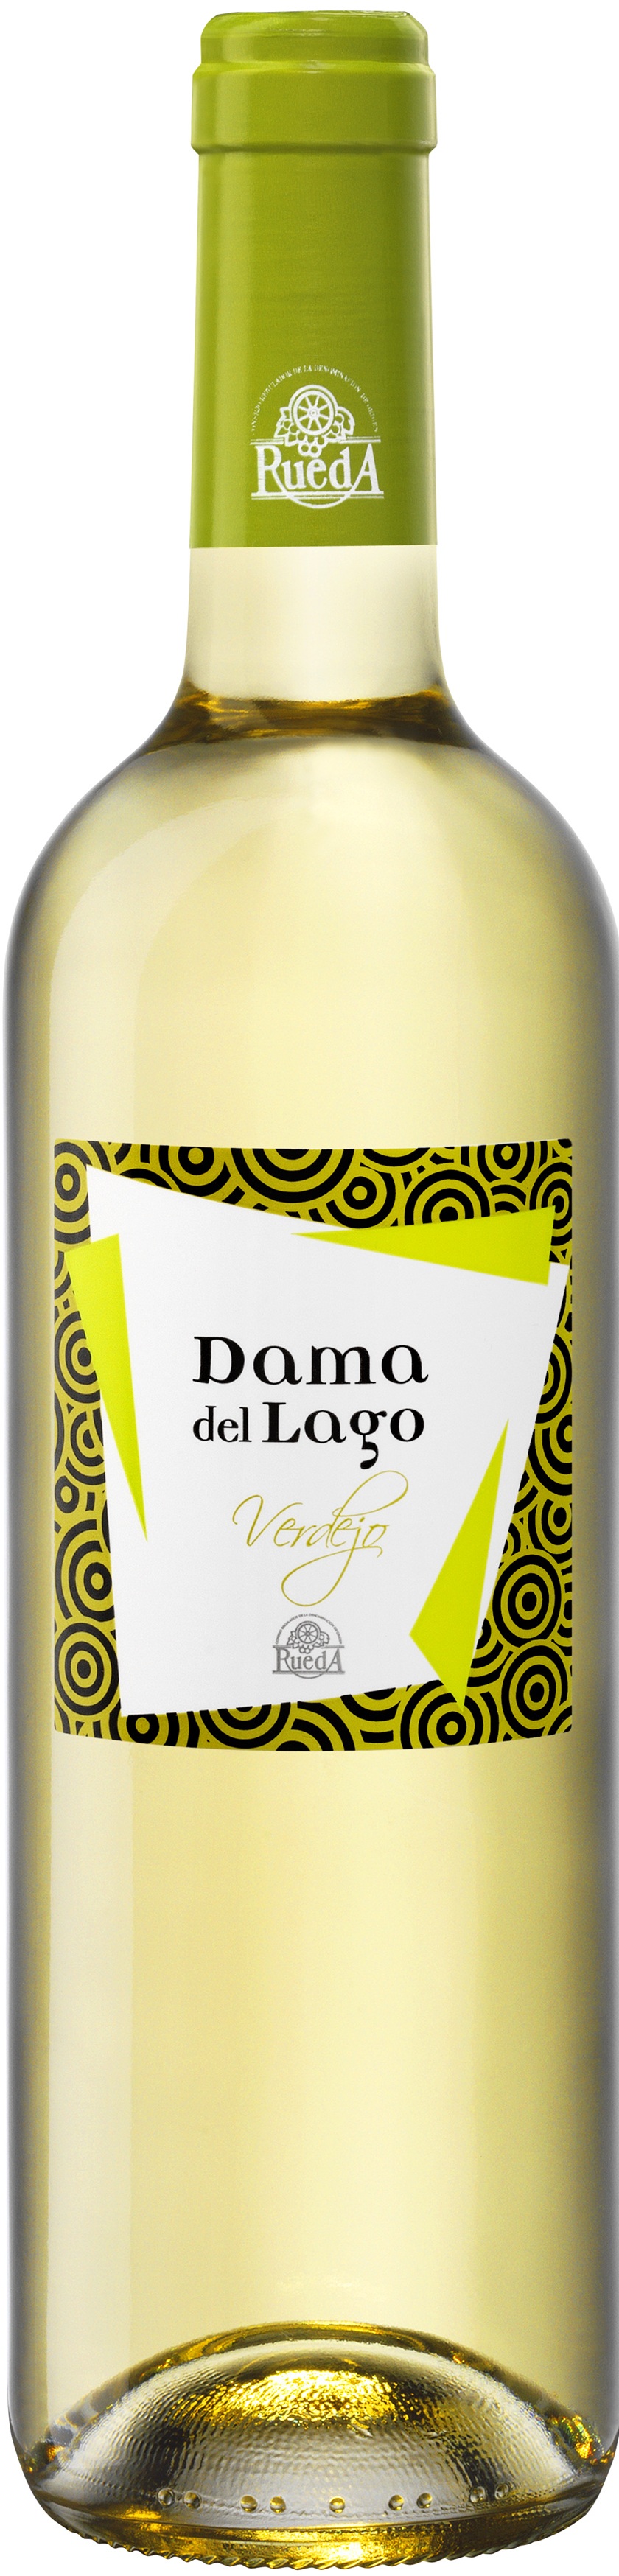 Image of Wine bottle Dama del Lago Verdejo